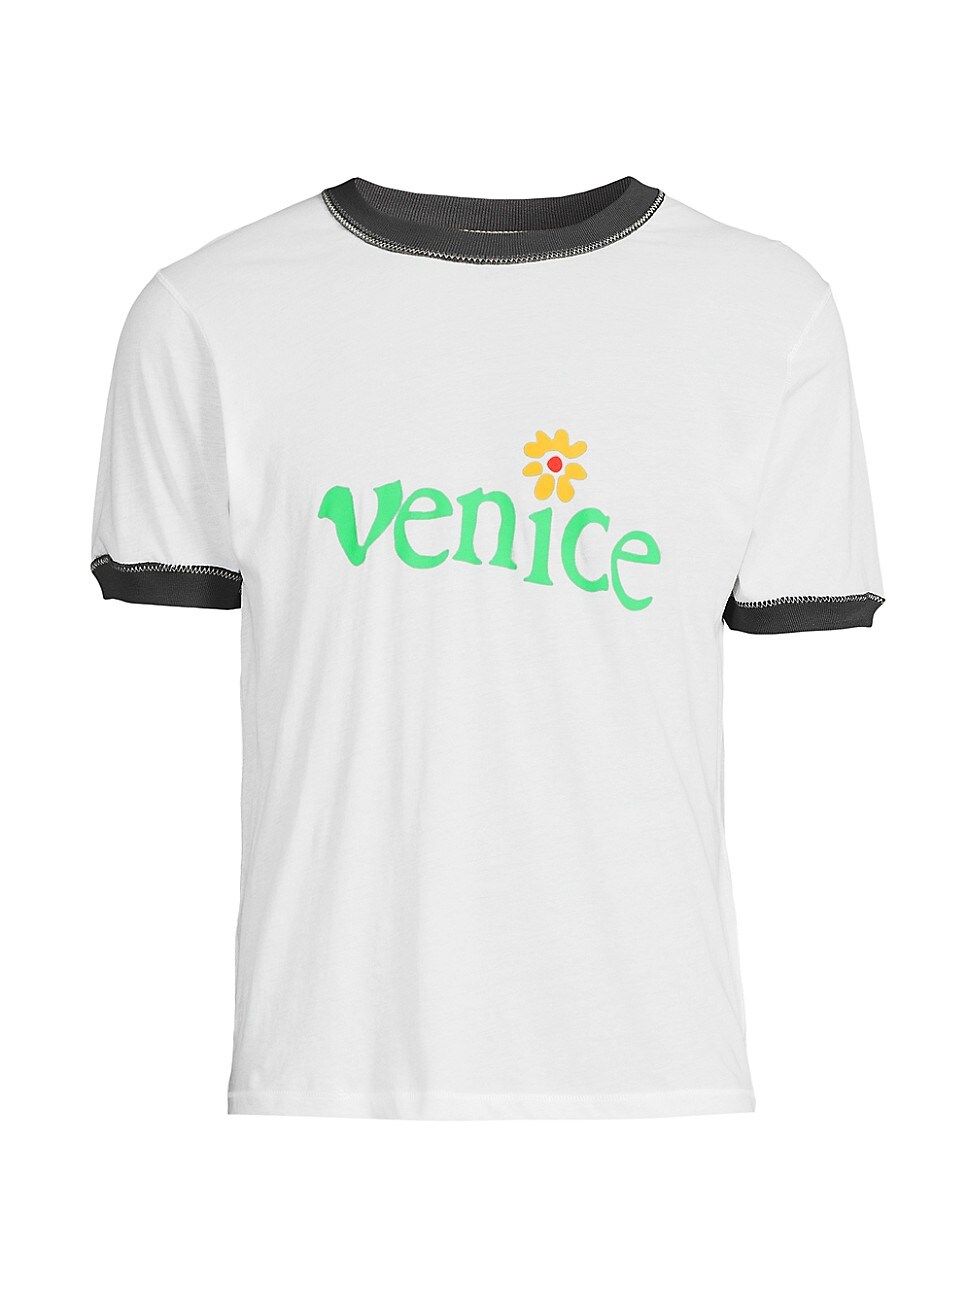 Men's Venice Cotton T-Shirt - White - Size Large | Saks Fifth Avenue